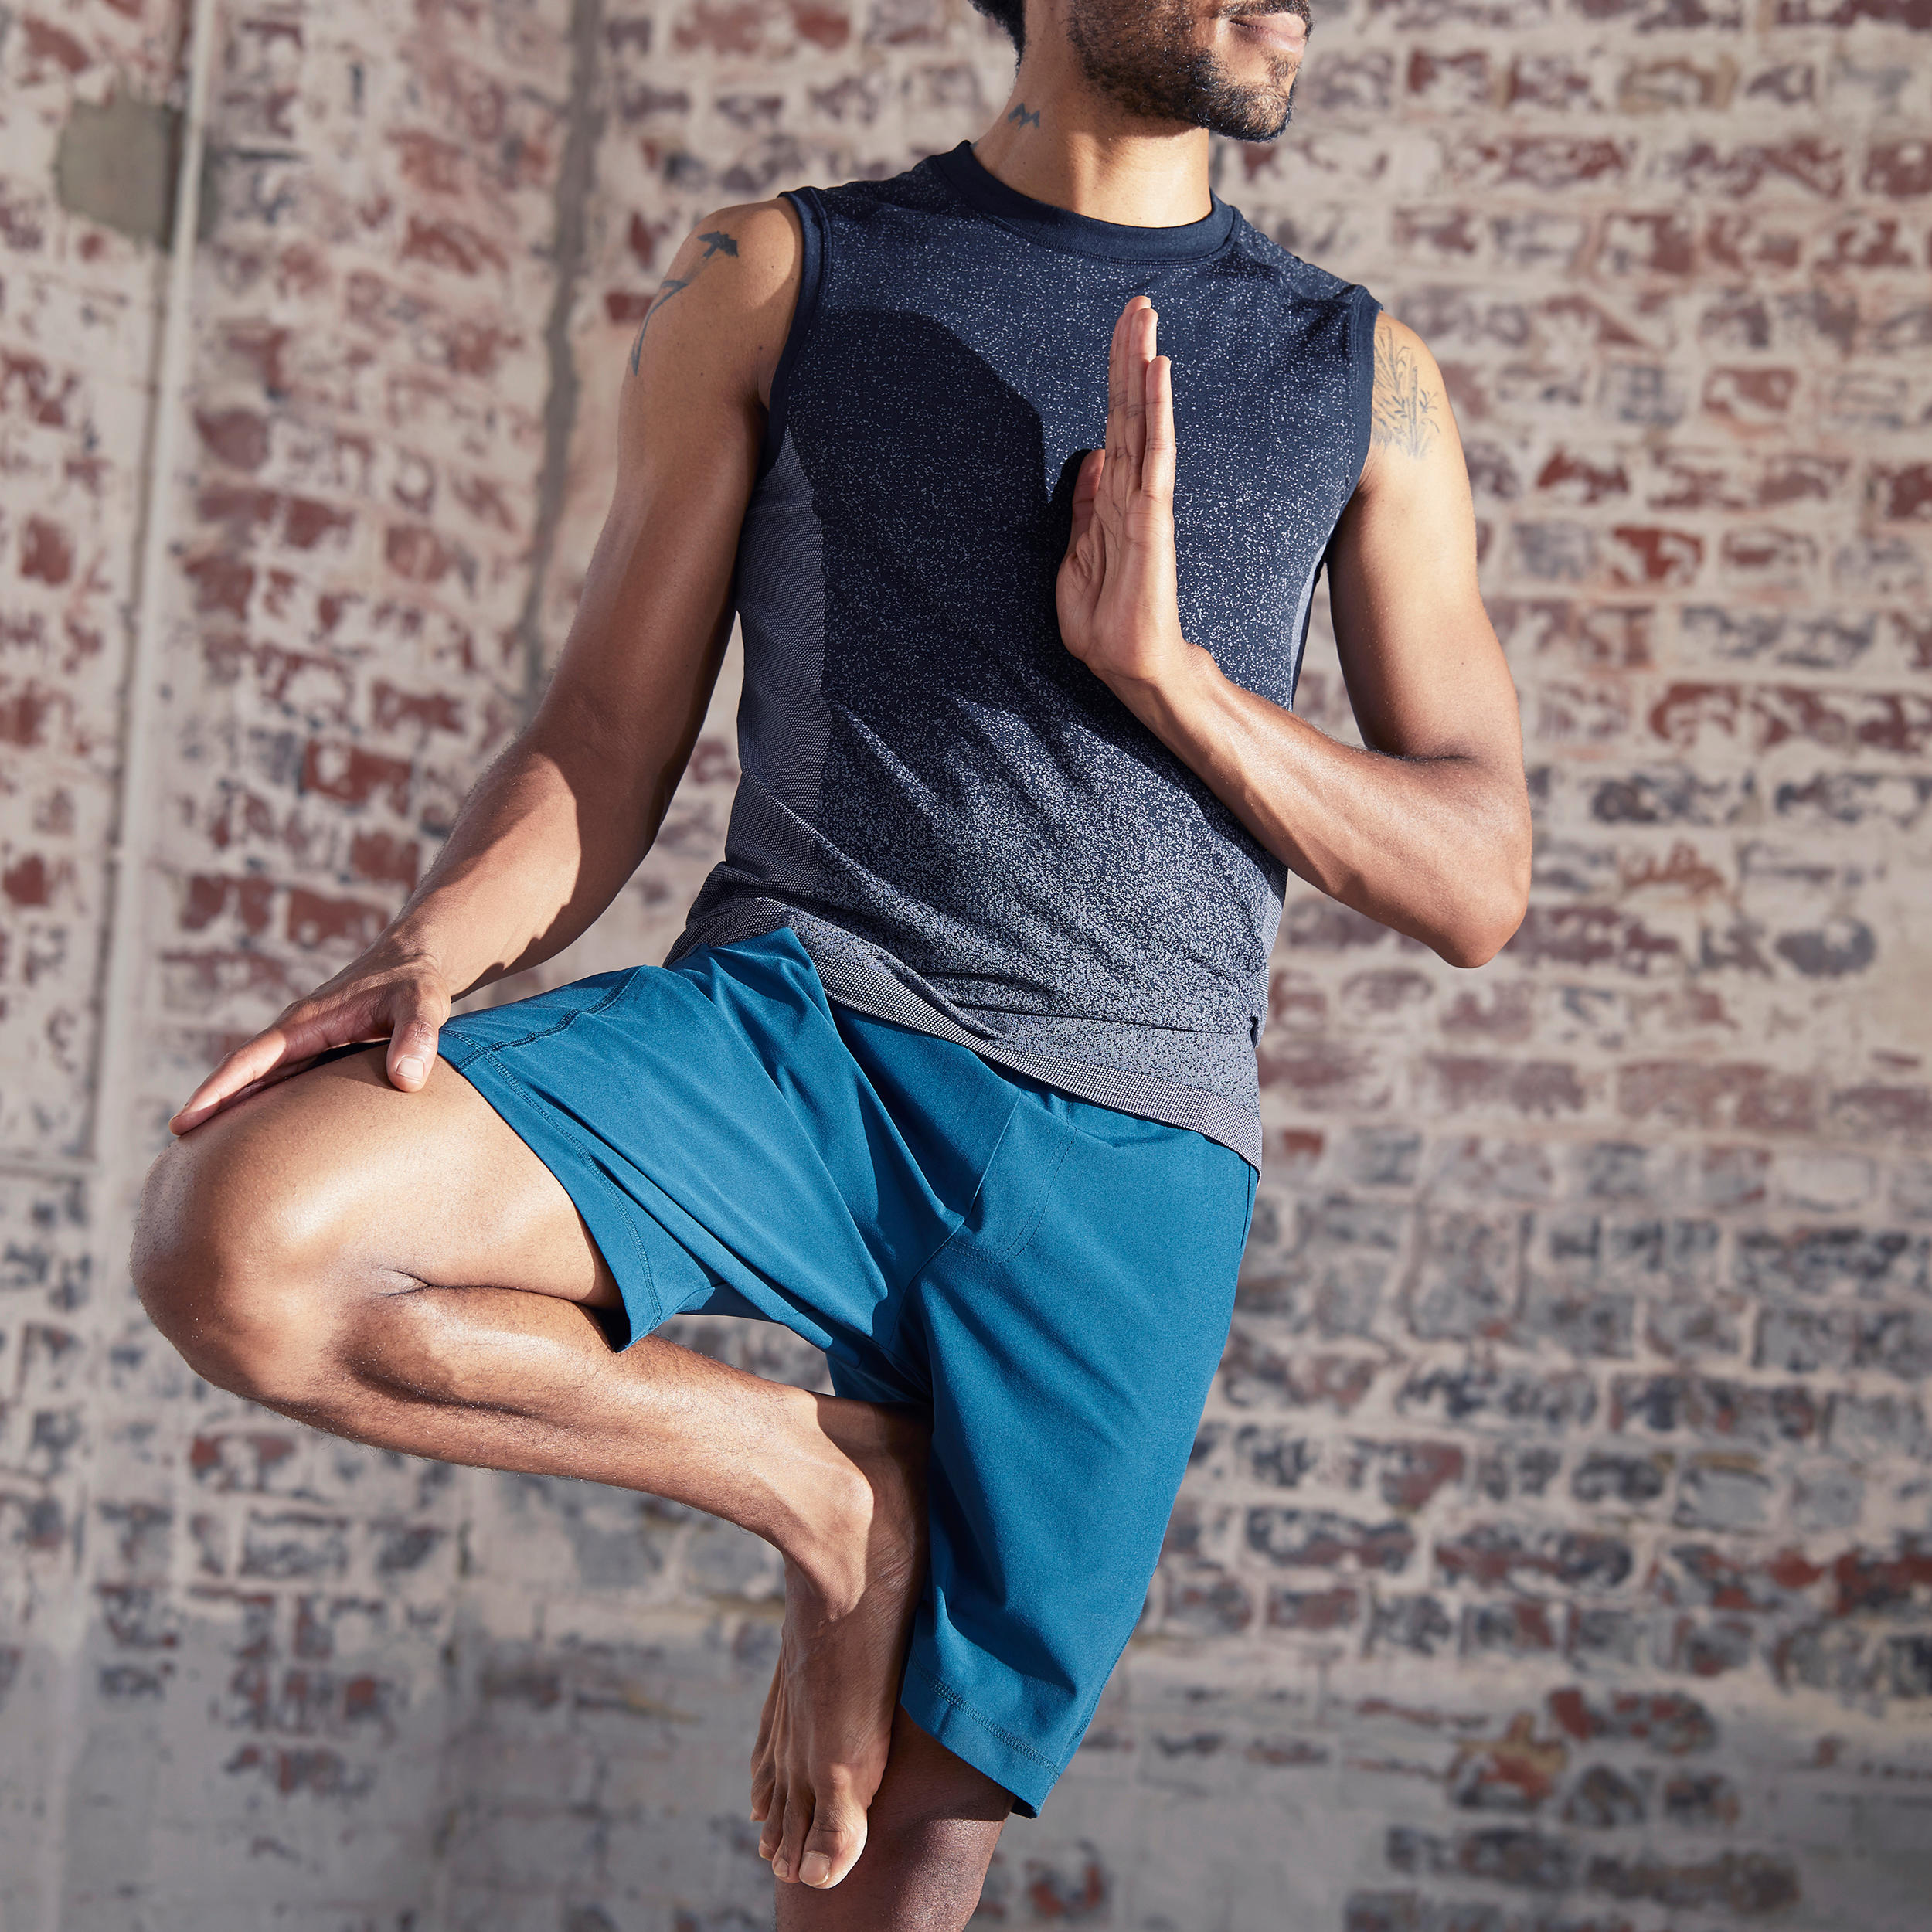 KIMJALY Woven Dynamic Yoga Shorts - Blue